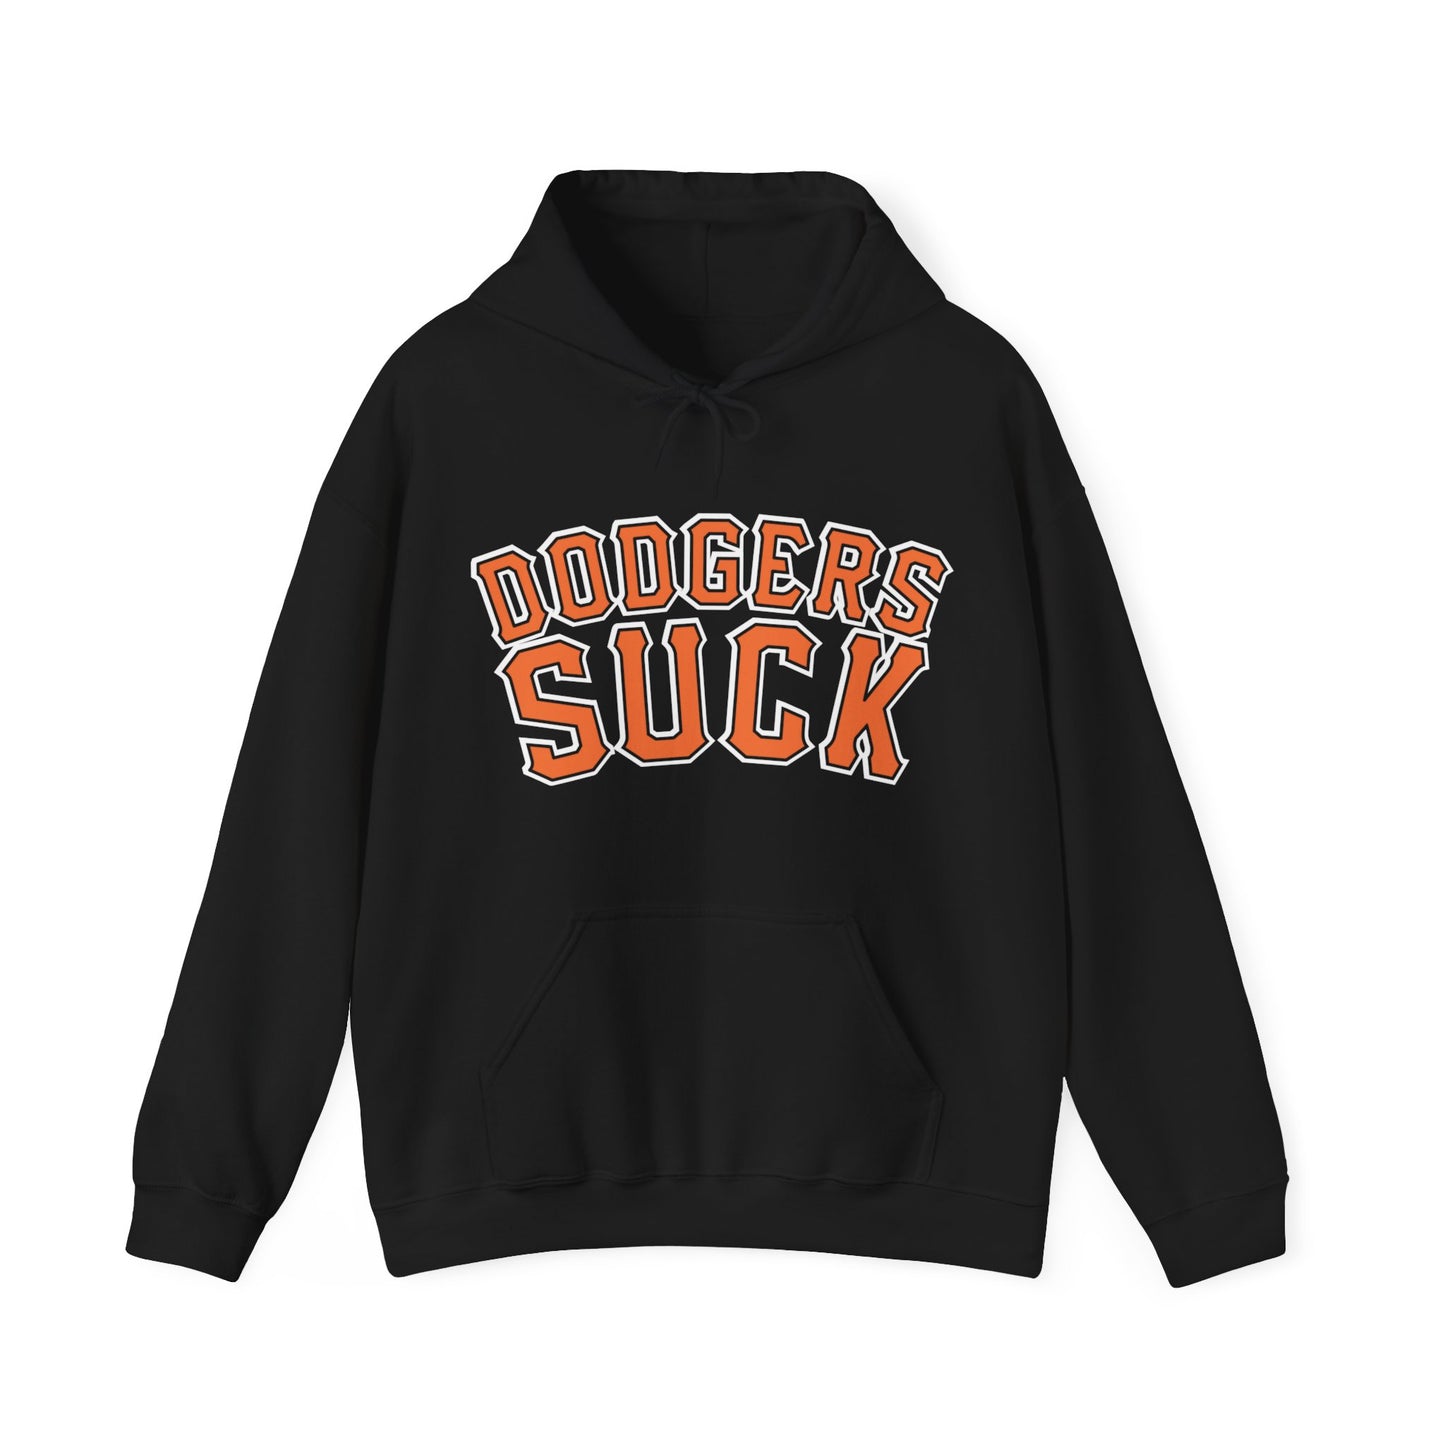 Dawjers Suck (for San Fran fans) - Unisex Heavy Blend™ Hooded Sweatshirt